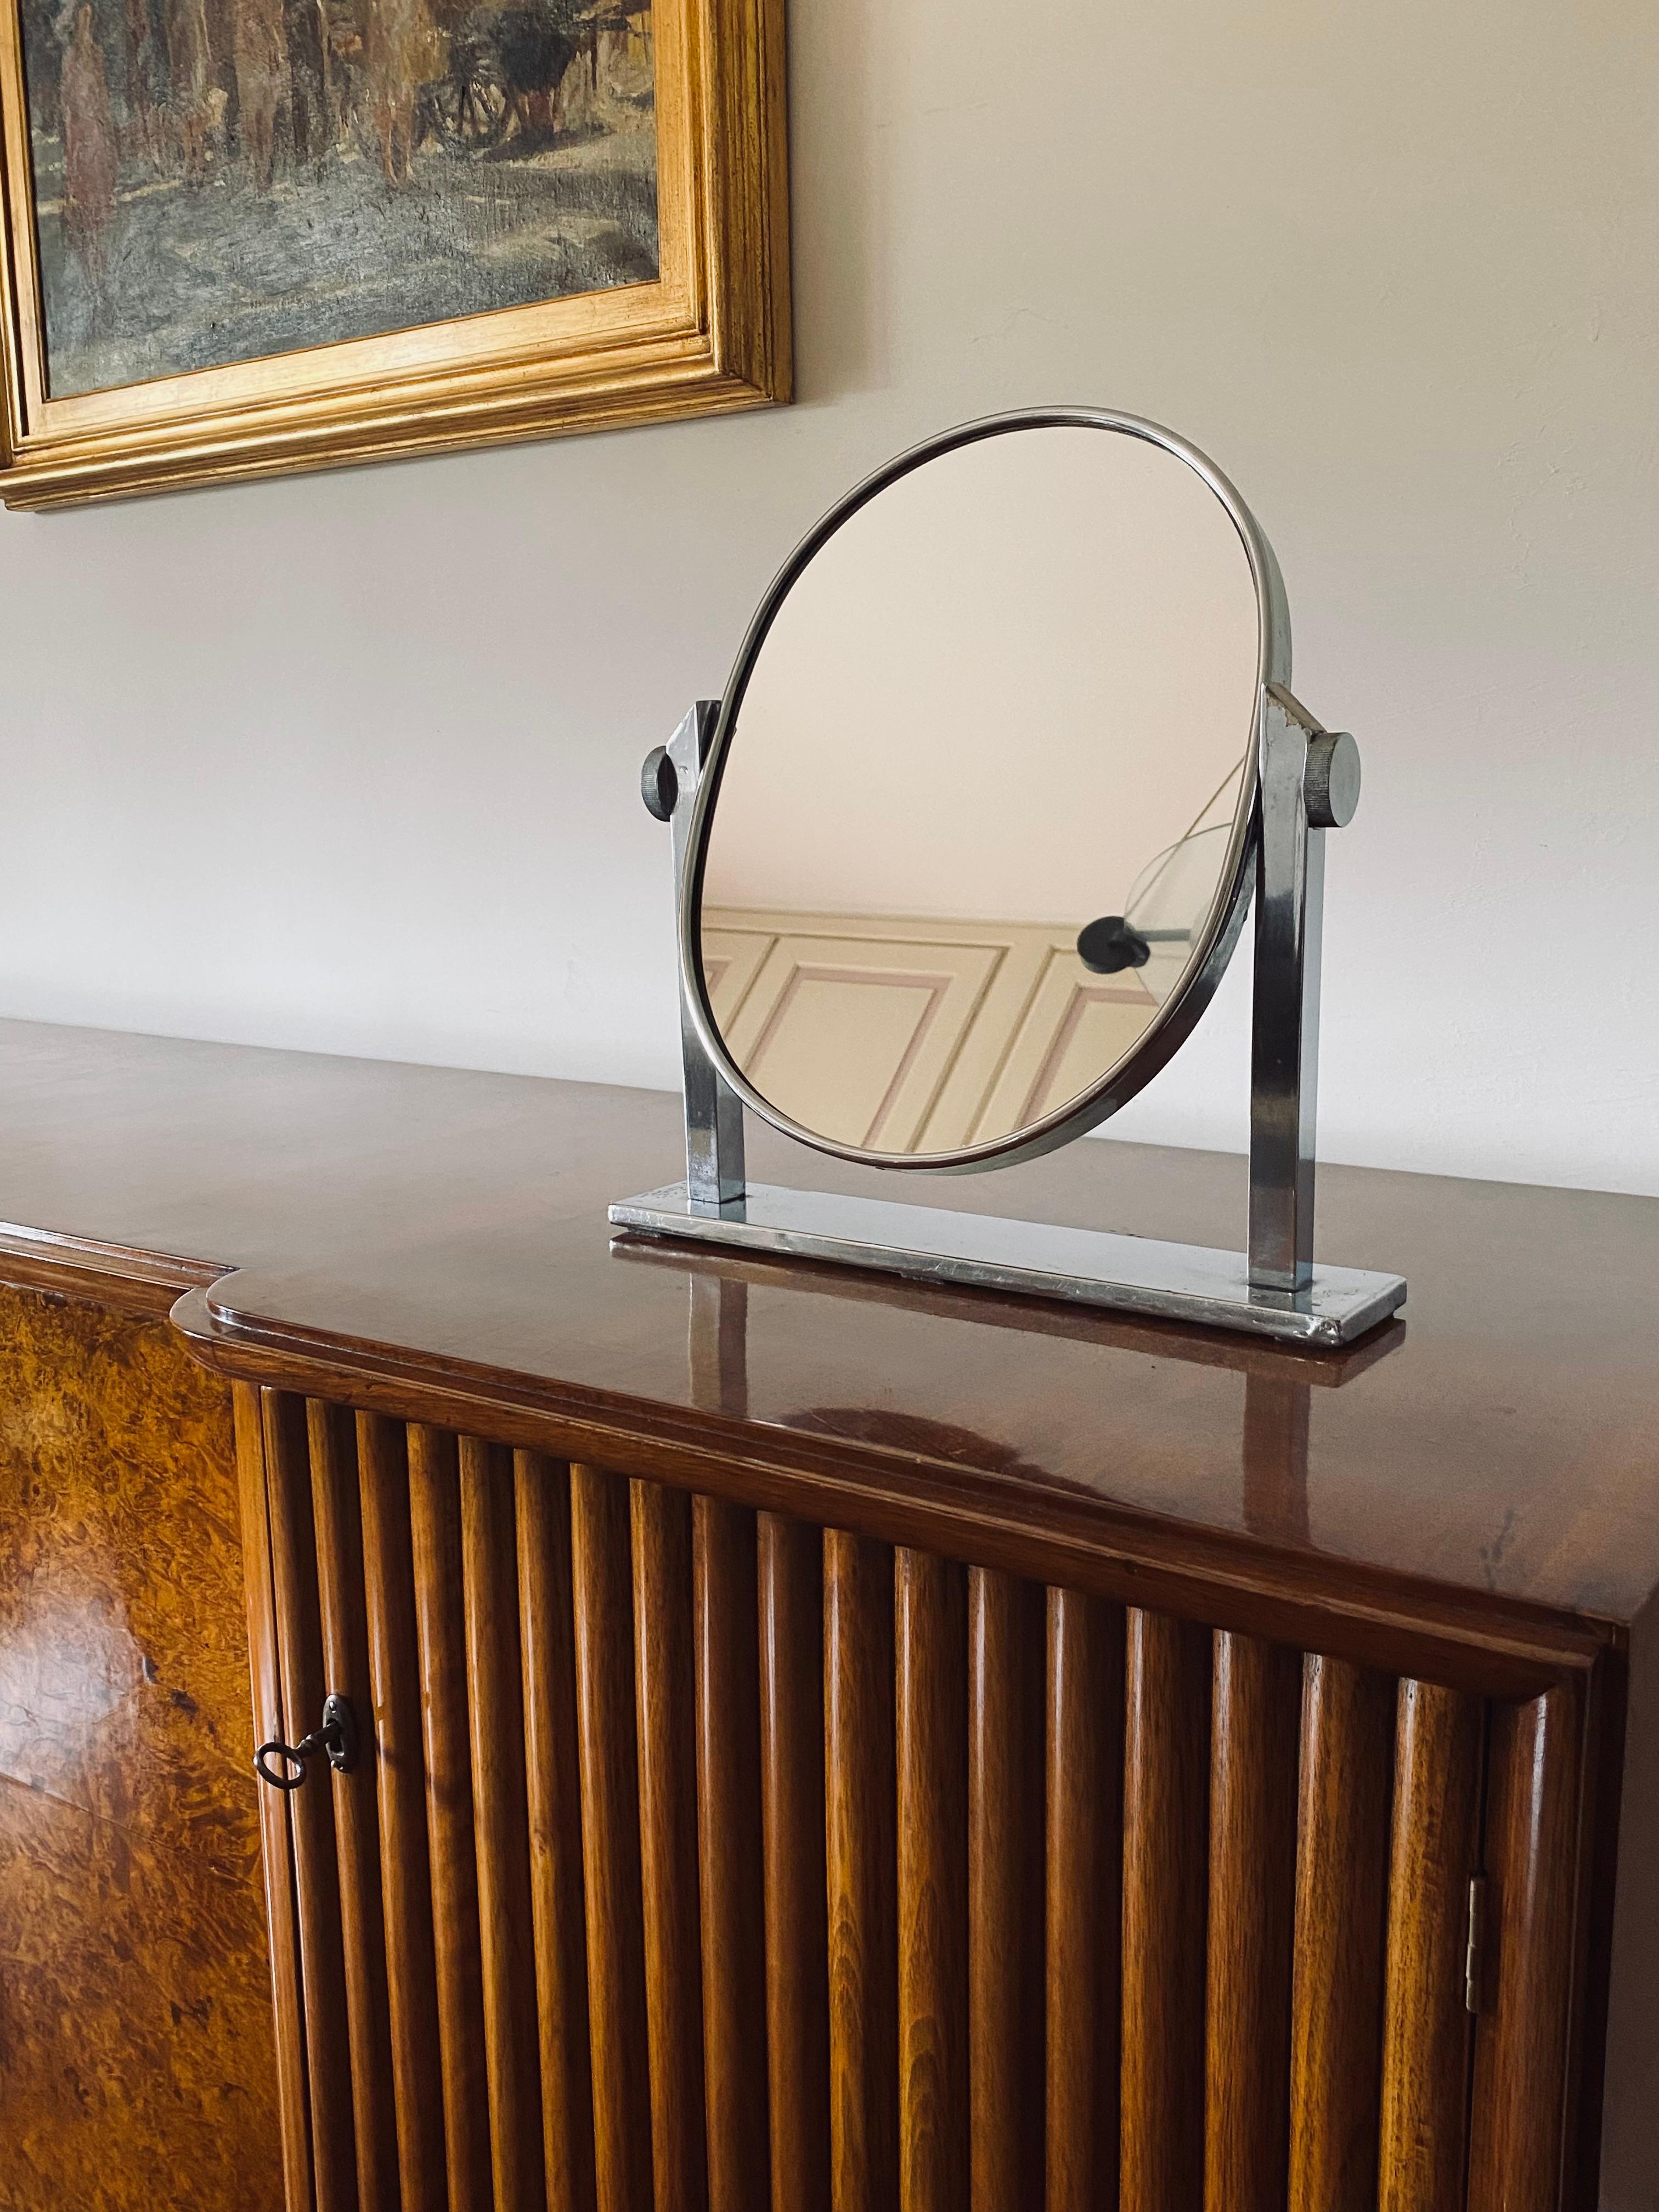 Miroir de table / vanité en laiton nickelé du milieu du siècle

Italie années 1960

laiton nickelé, miroir

H 38 cm x 36 x 7,5 cm

Condit : très bien, conforme à l'âge et à l'utilisation.